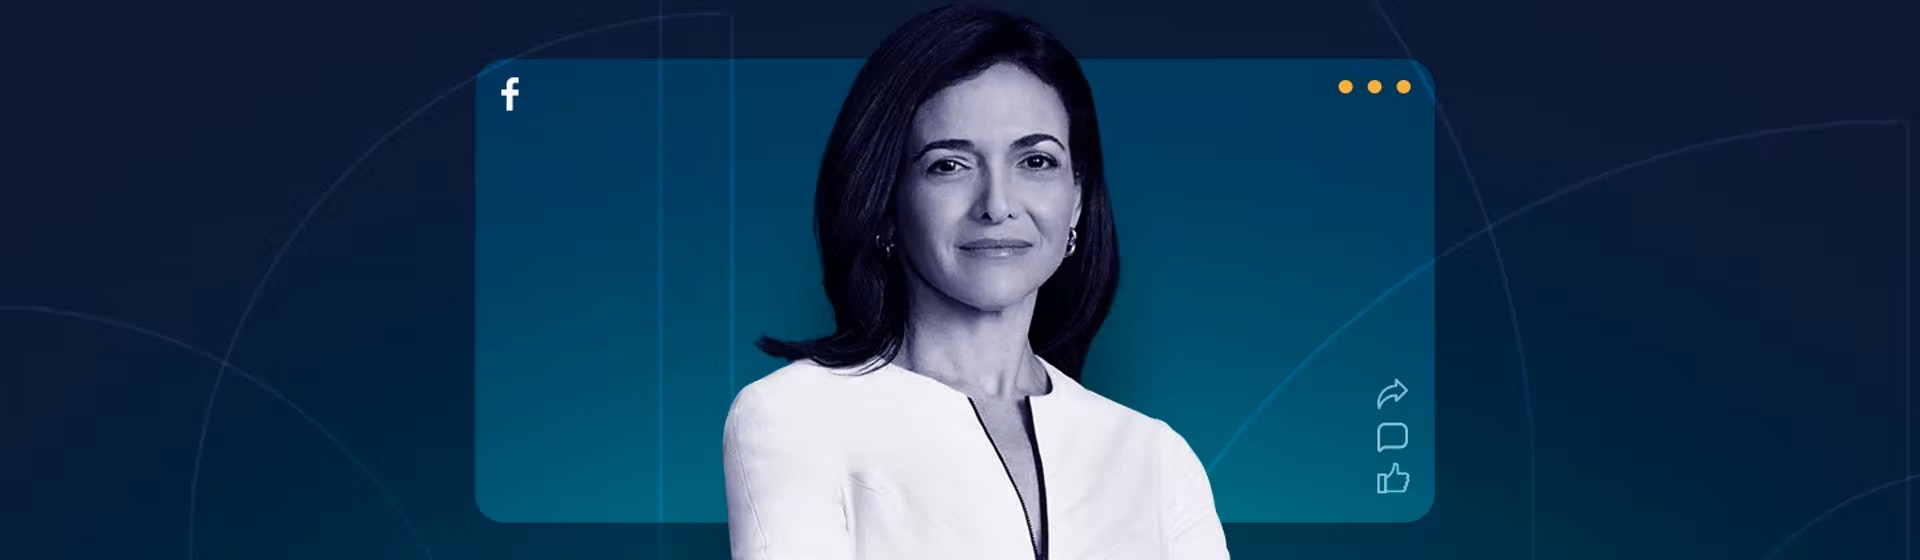 Dicas de liderança da Diretora de Operações de Facebook, Sheryl Sandberg